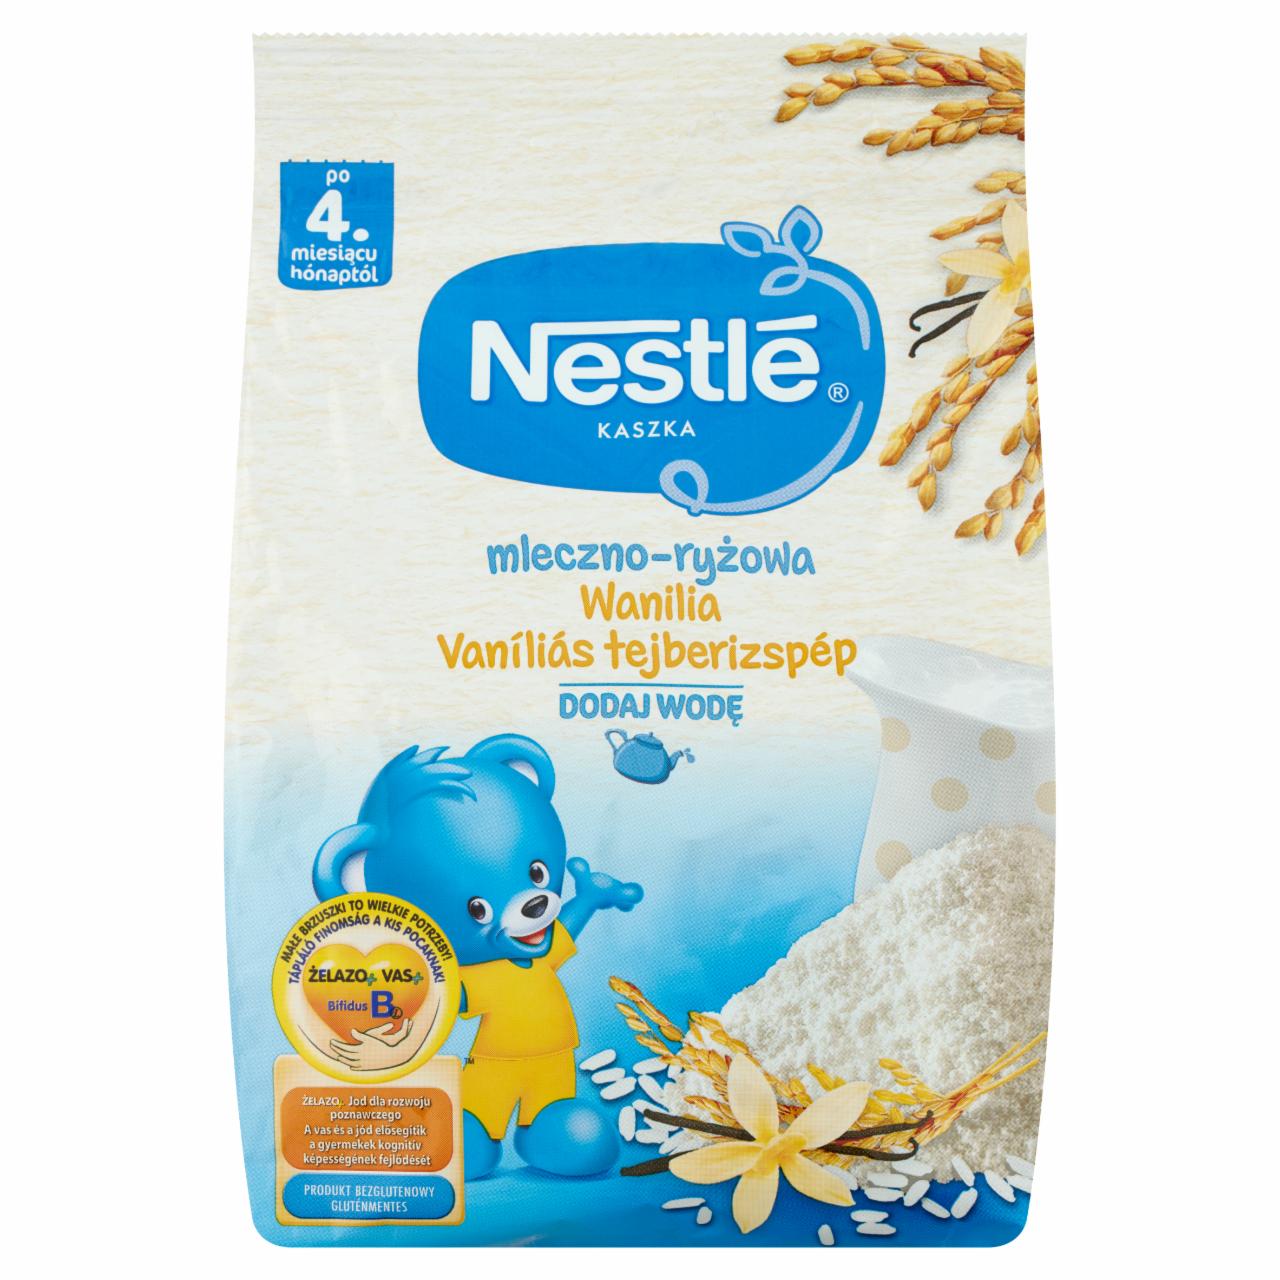 Képek - Nestlé vaníliás tejberizspép 4. hónaptól 230 g